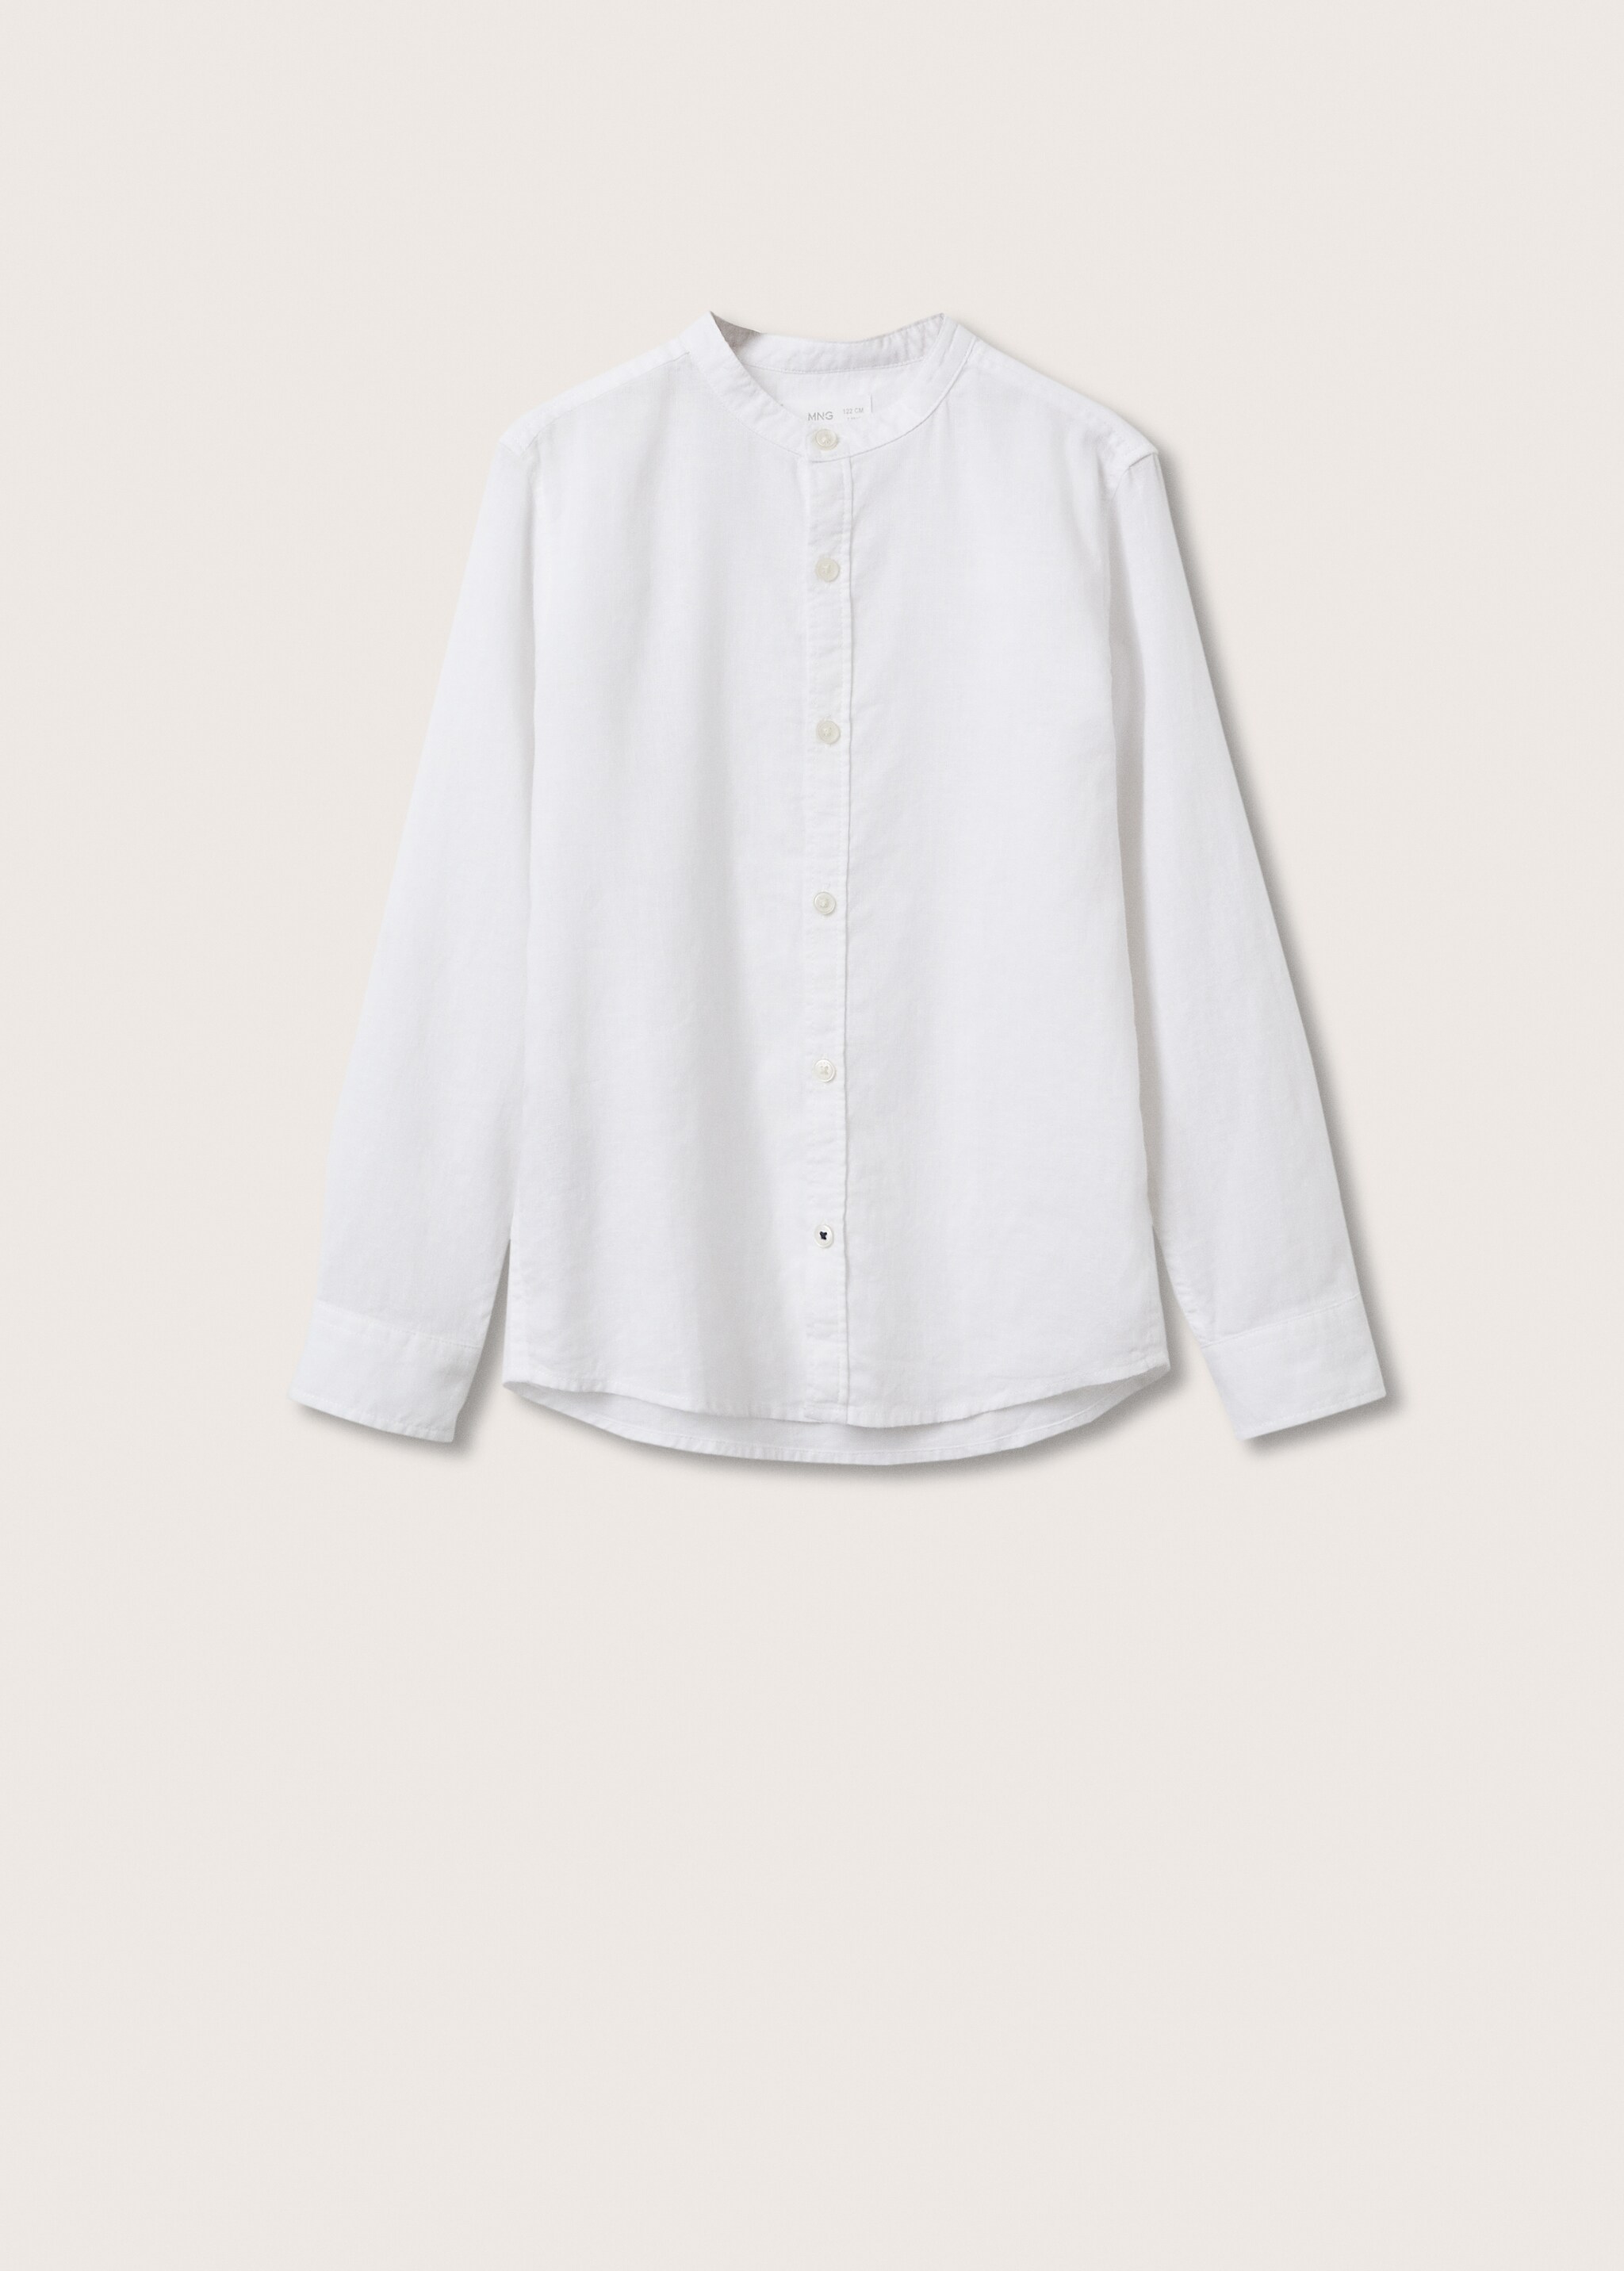 Camisa algodón lino - Artículo sin modelo